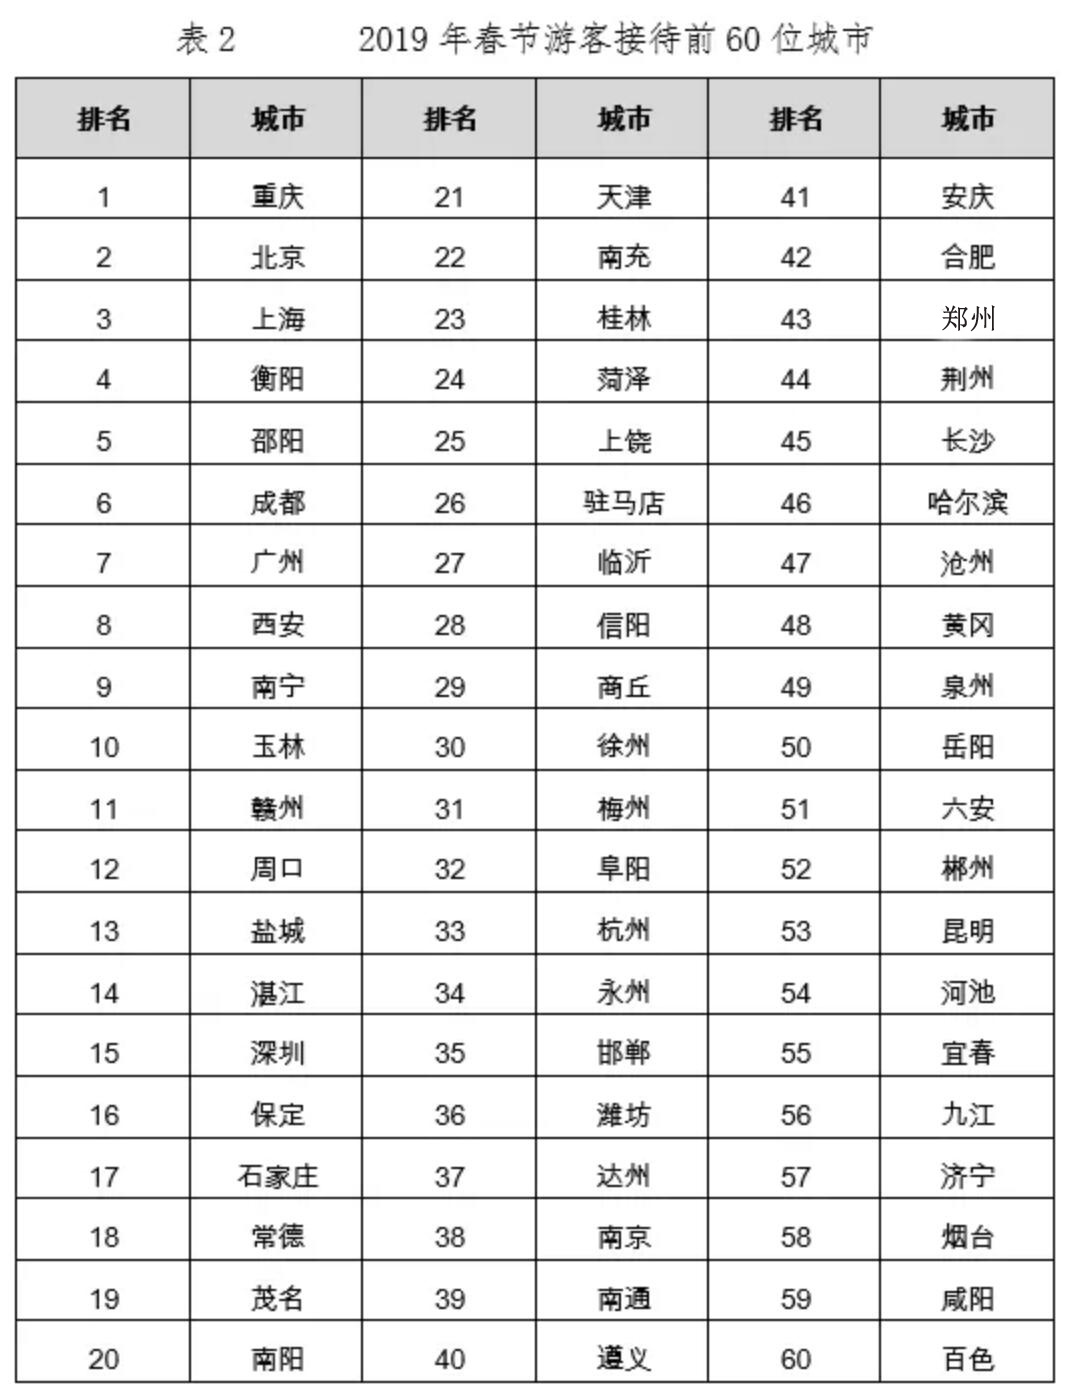 春节游客前60名城市公布:永州排名全国第34